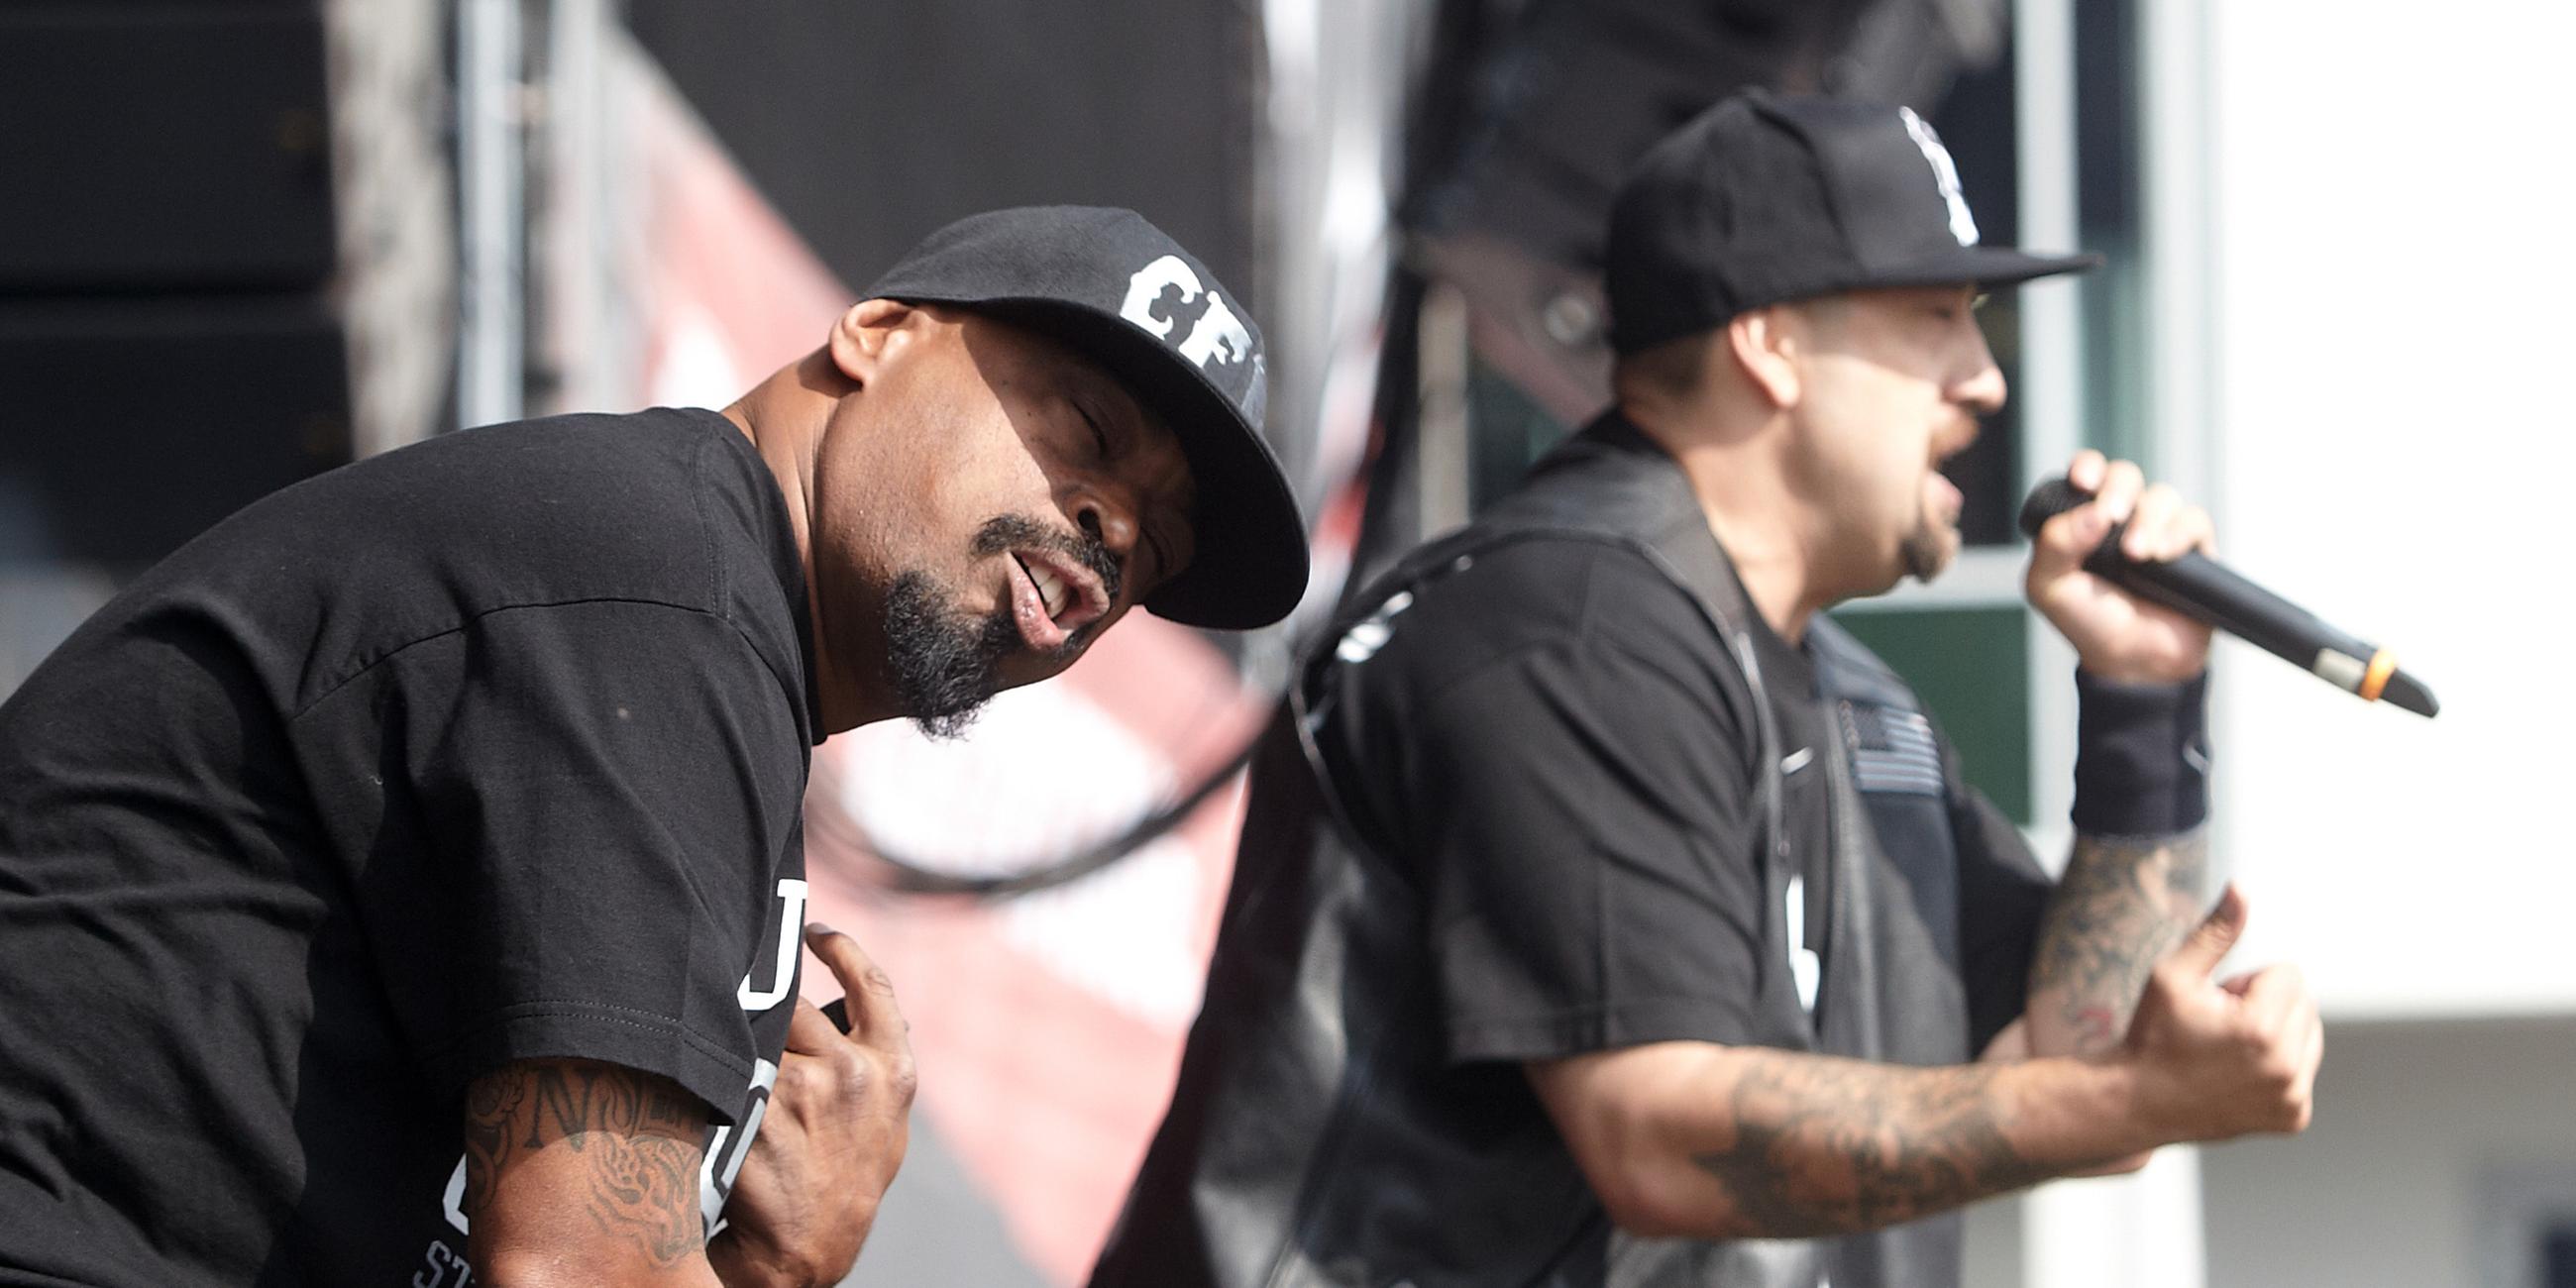 Nürburgring: Die Rapper Sen Dog (l) und B-Real von Cypress Hill treten beim Rockfestival "Rock am Ring" auf. Archivbild